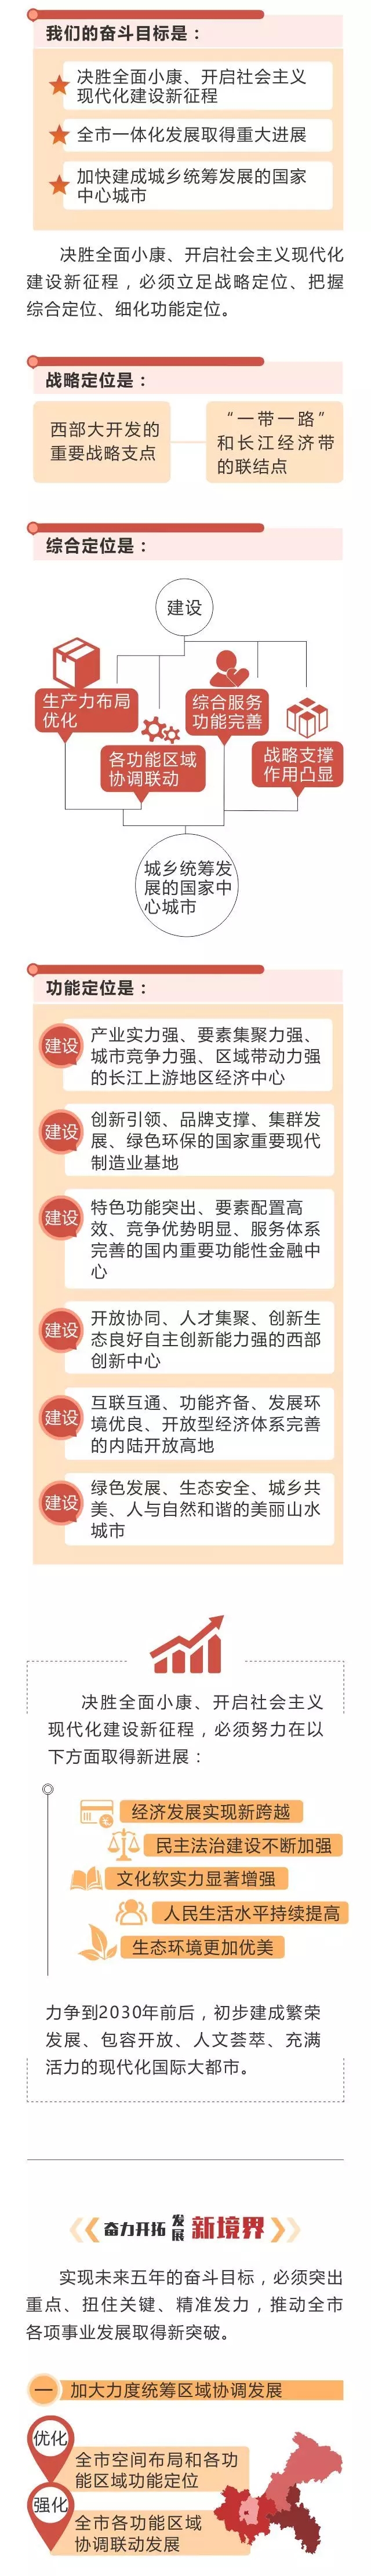 重庆市第五次党代会报告2.jpg